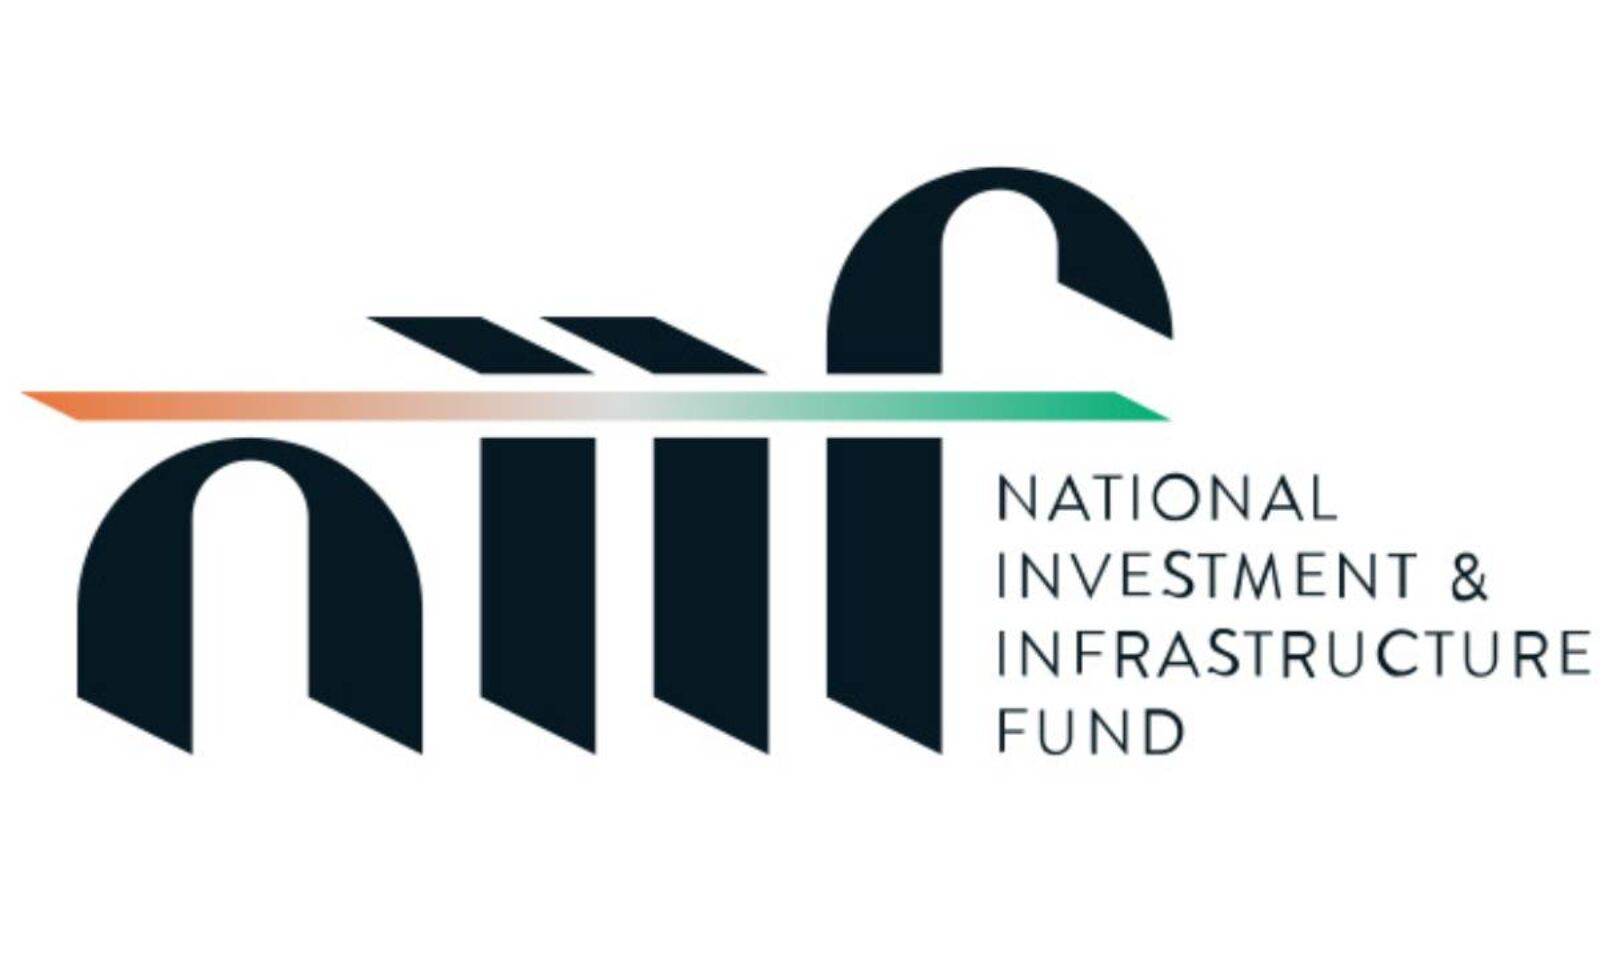 International Investment & Infrastructure Fund